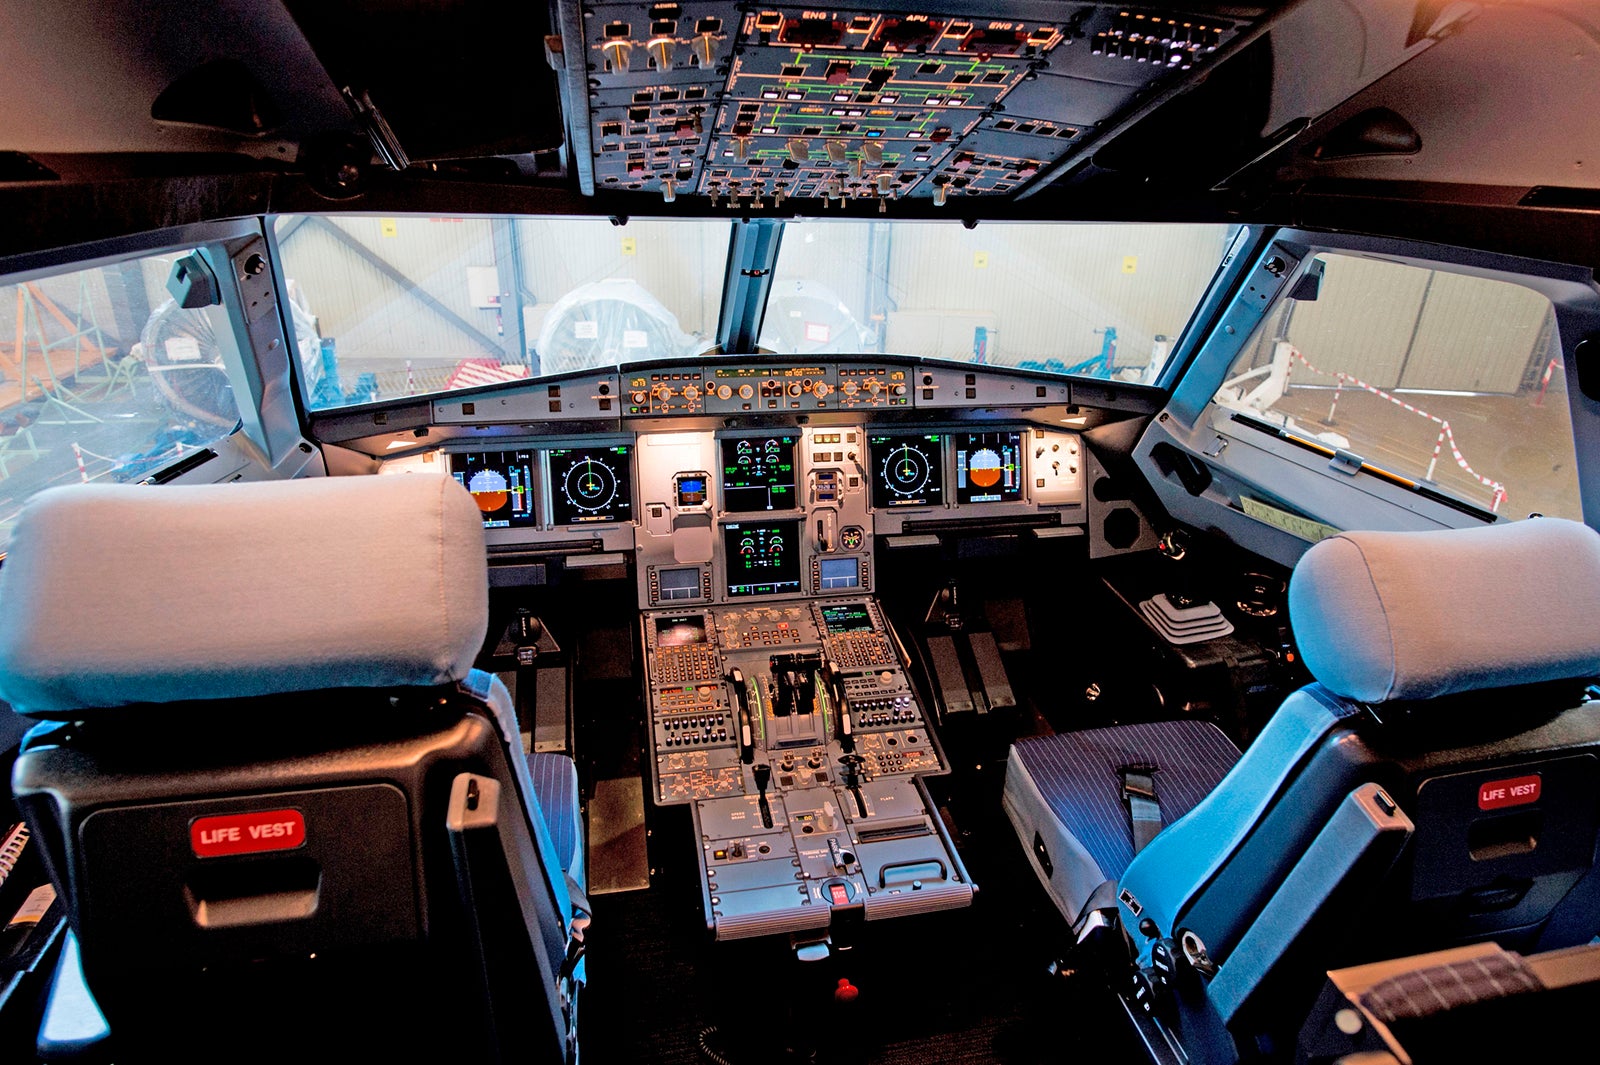 boeing vs airbus cockpit